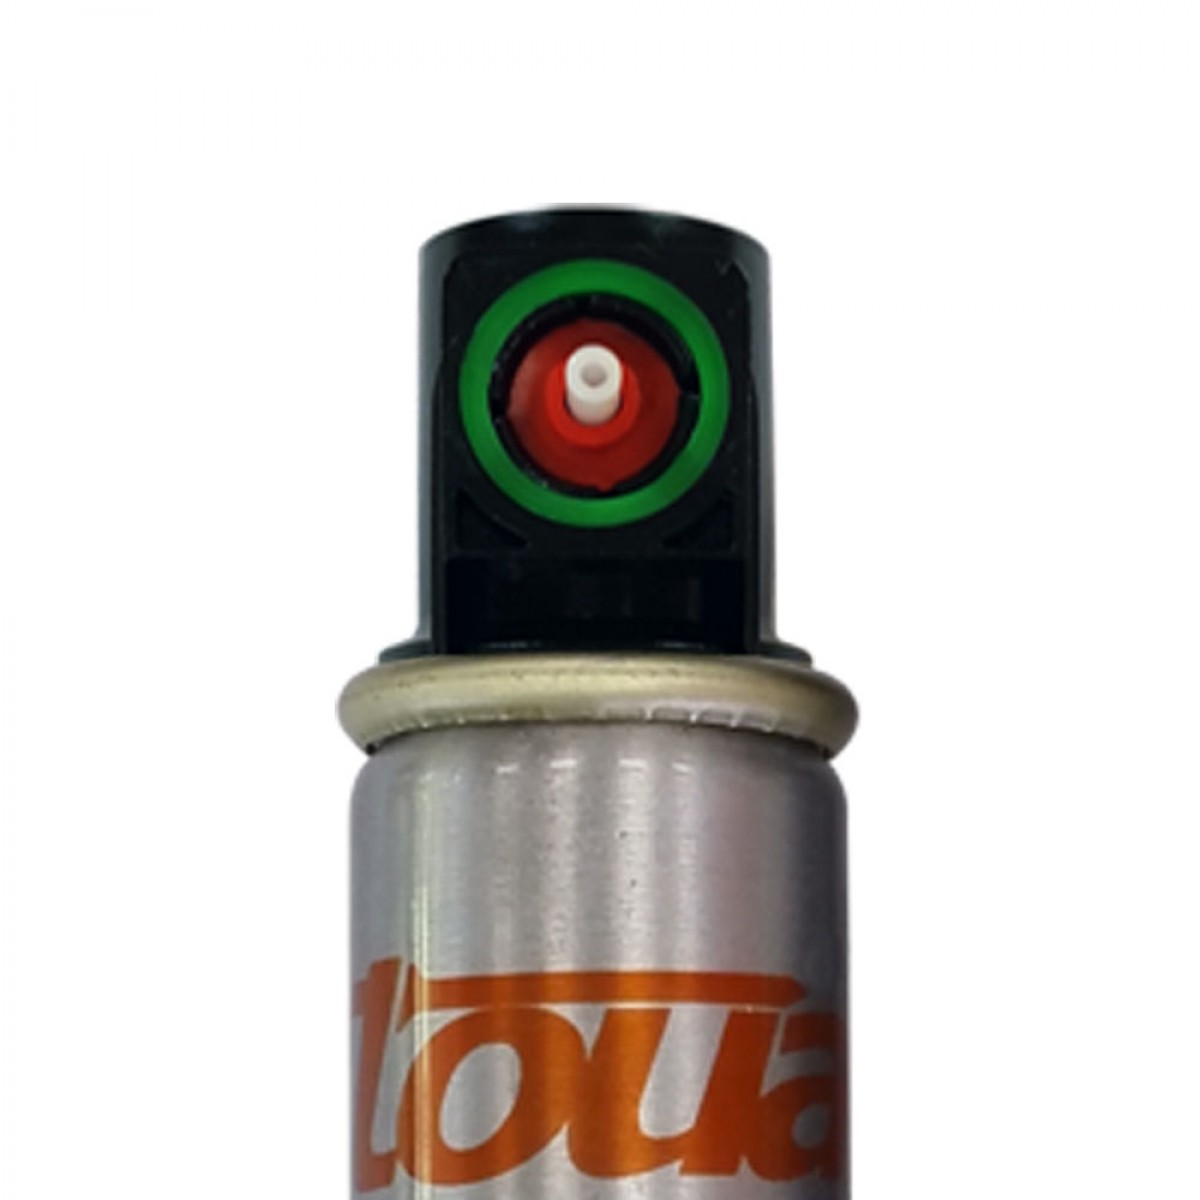 Фото Газовый баллон Toua с зелёным клапаном 165 мм Стандарт в интернет-магазине ToolHaus.ru